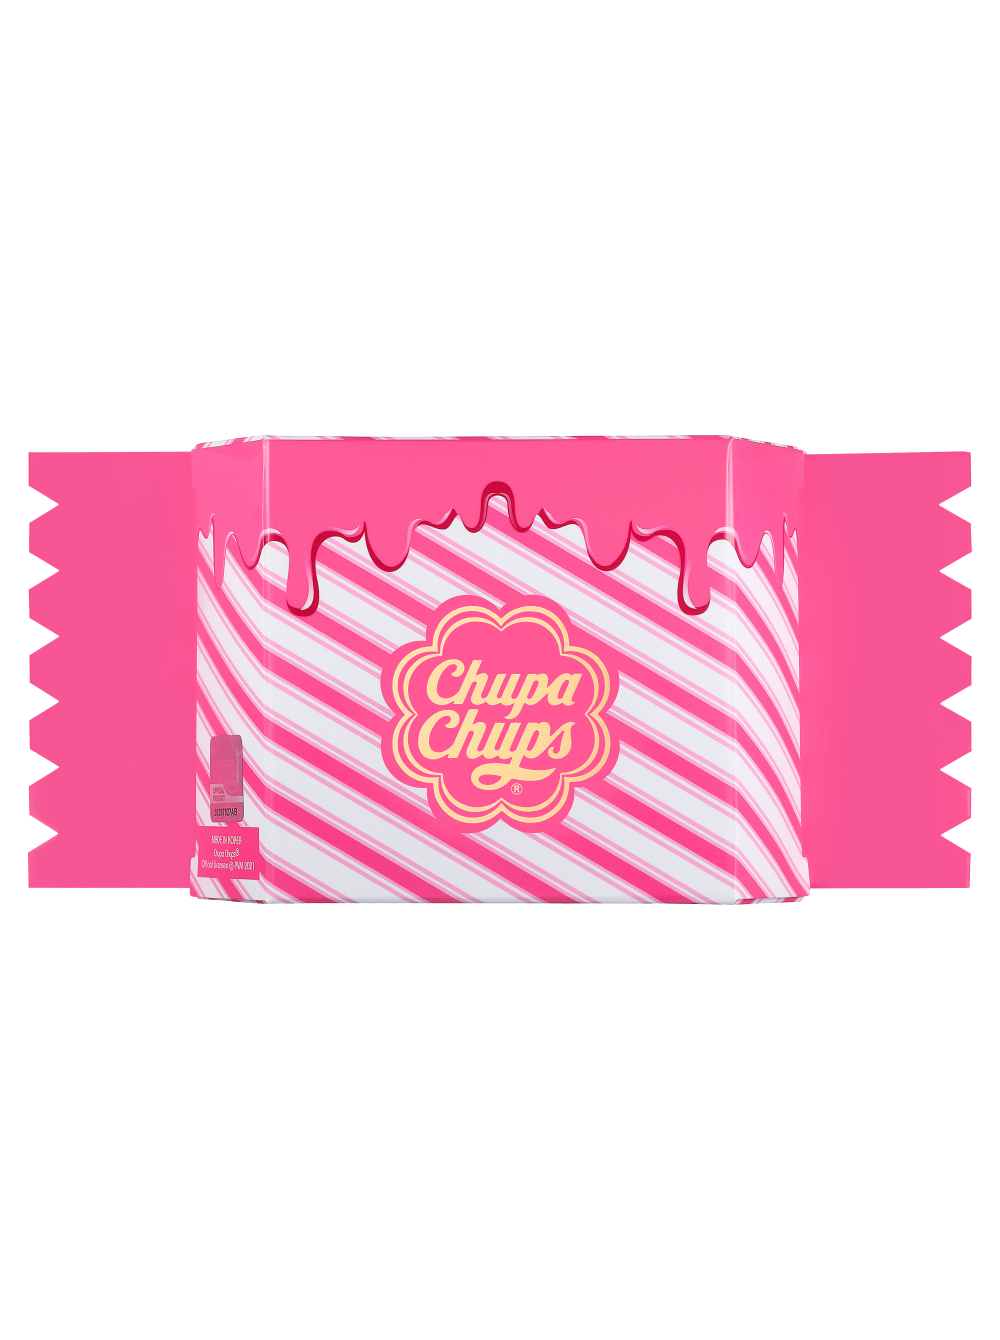 Тональная основа-кушон chupa chups. Кушон Чупа Чупс 2.0 Shell оттенок. Chupa chups Candy Glow Cushion. Chupa chups Candy Glow Cushion тон.